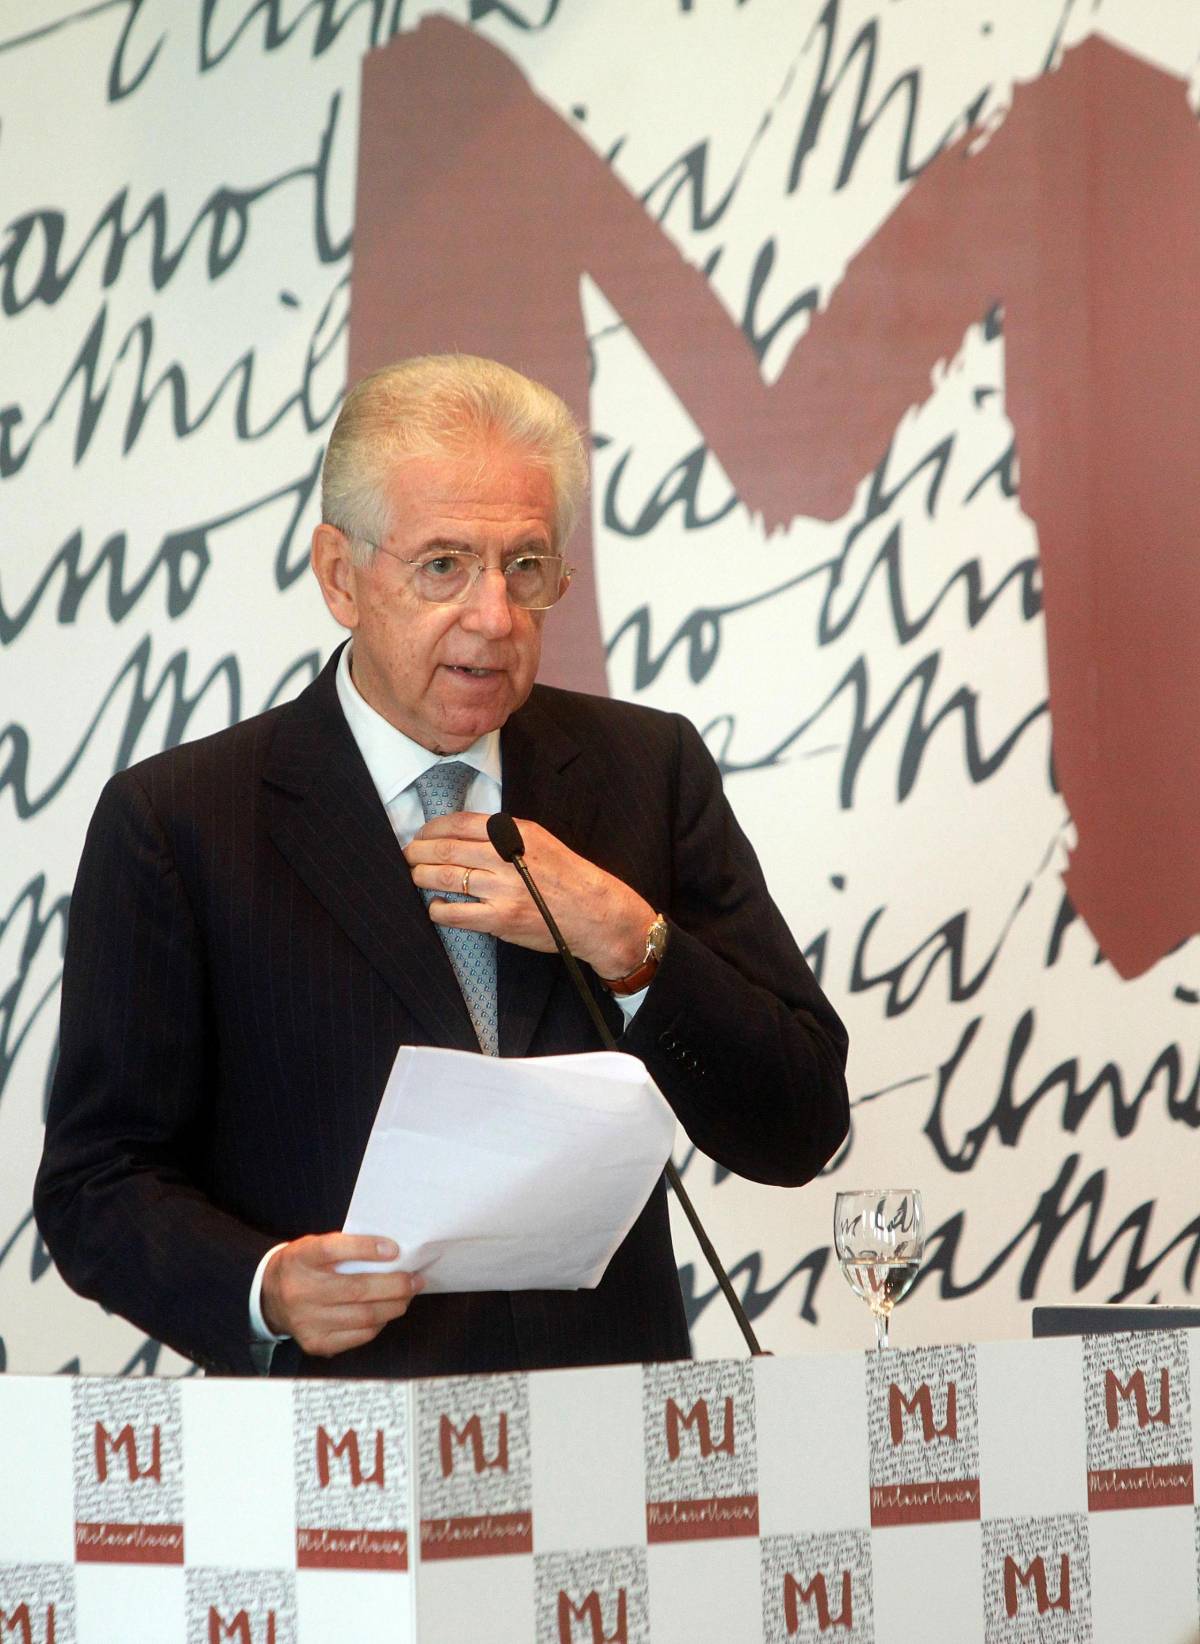 Blocco pensioni, Monti si difende: "Se non l'avessimo fatto sarebbe arrivata la Troika" 